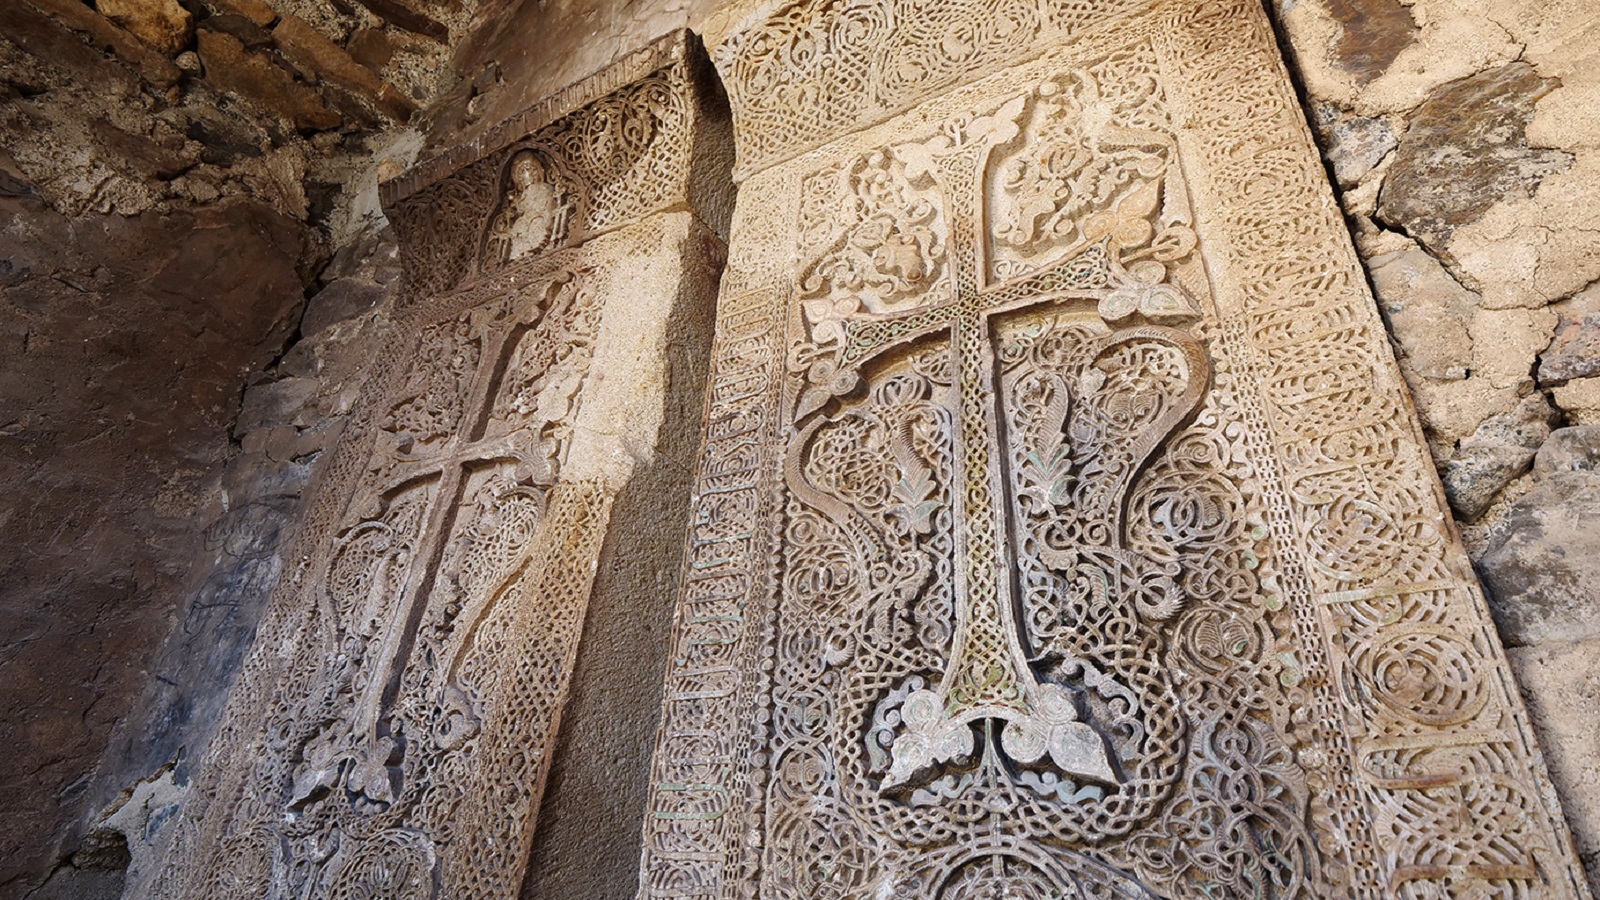 من مجموعة شواهد القبور المحفوظة في الدير.